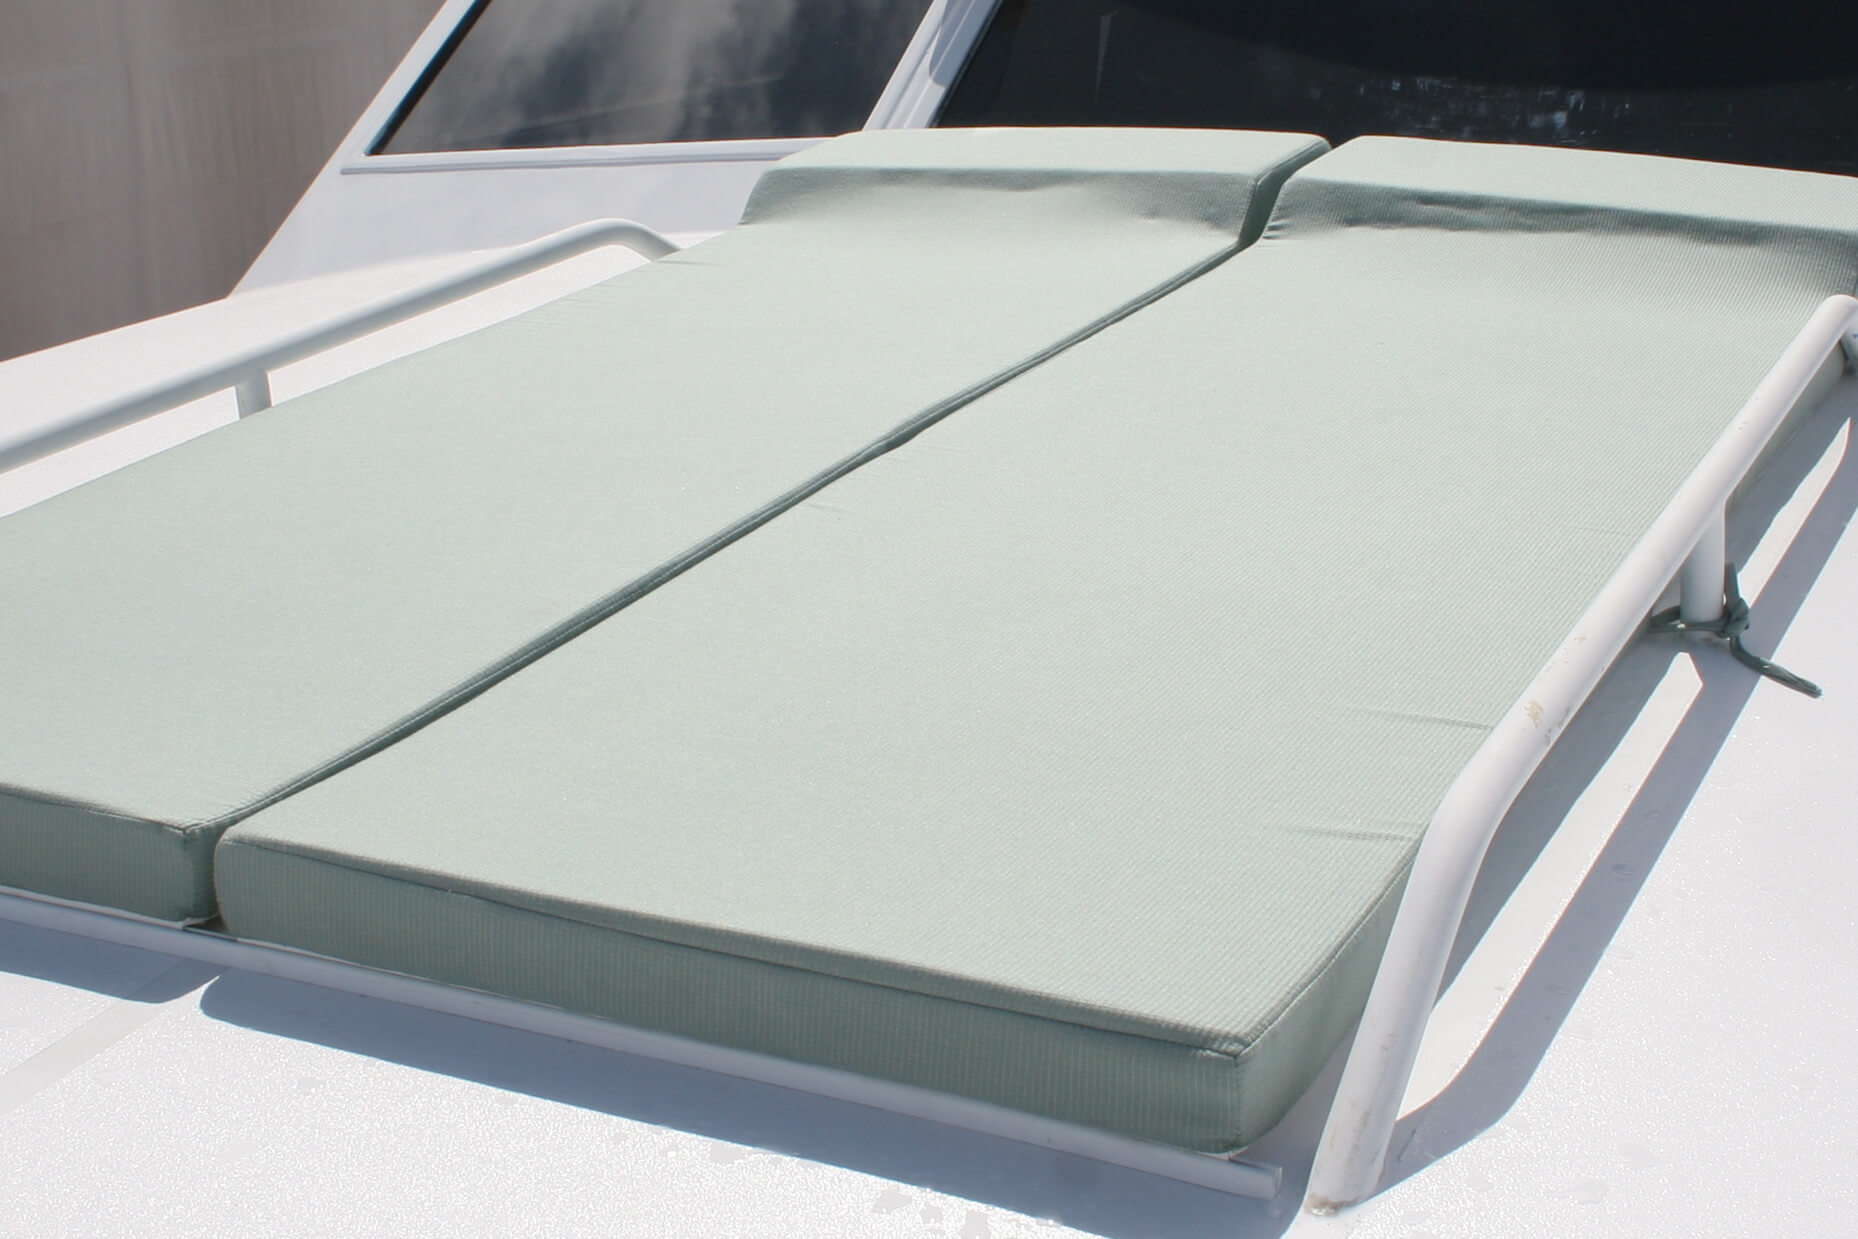 Sunpads revestidos em tecidos Sunbrella oferecem um lugar para aproveitar o sol no deck de um barco